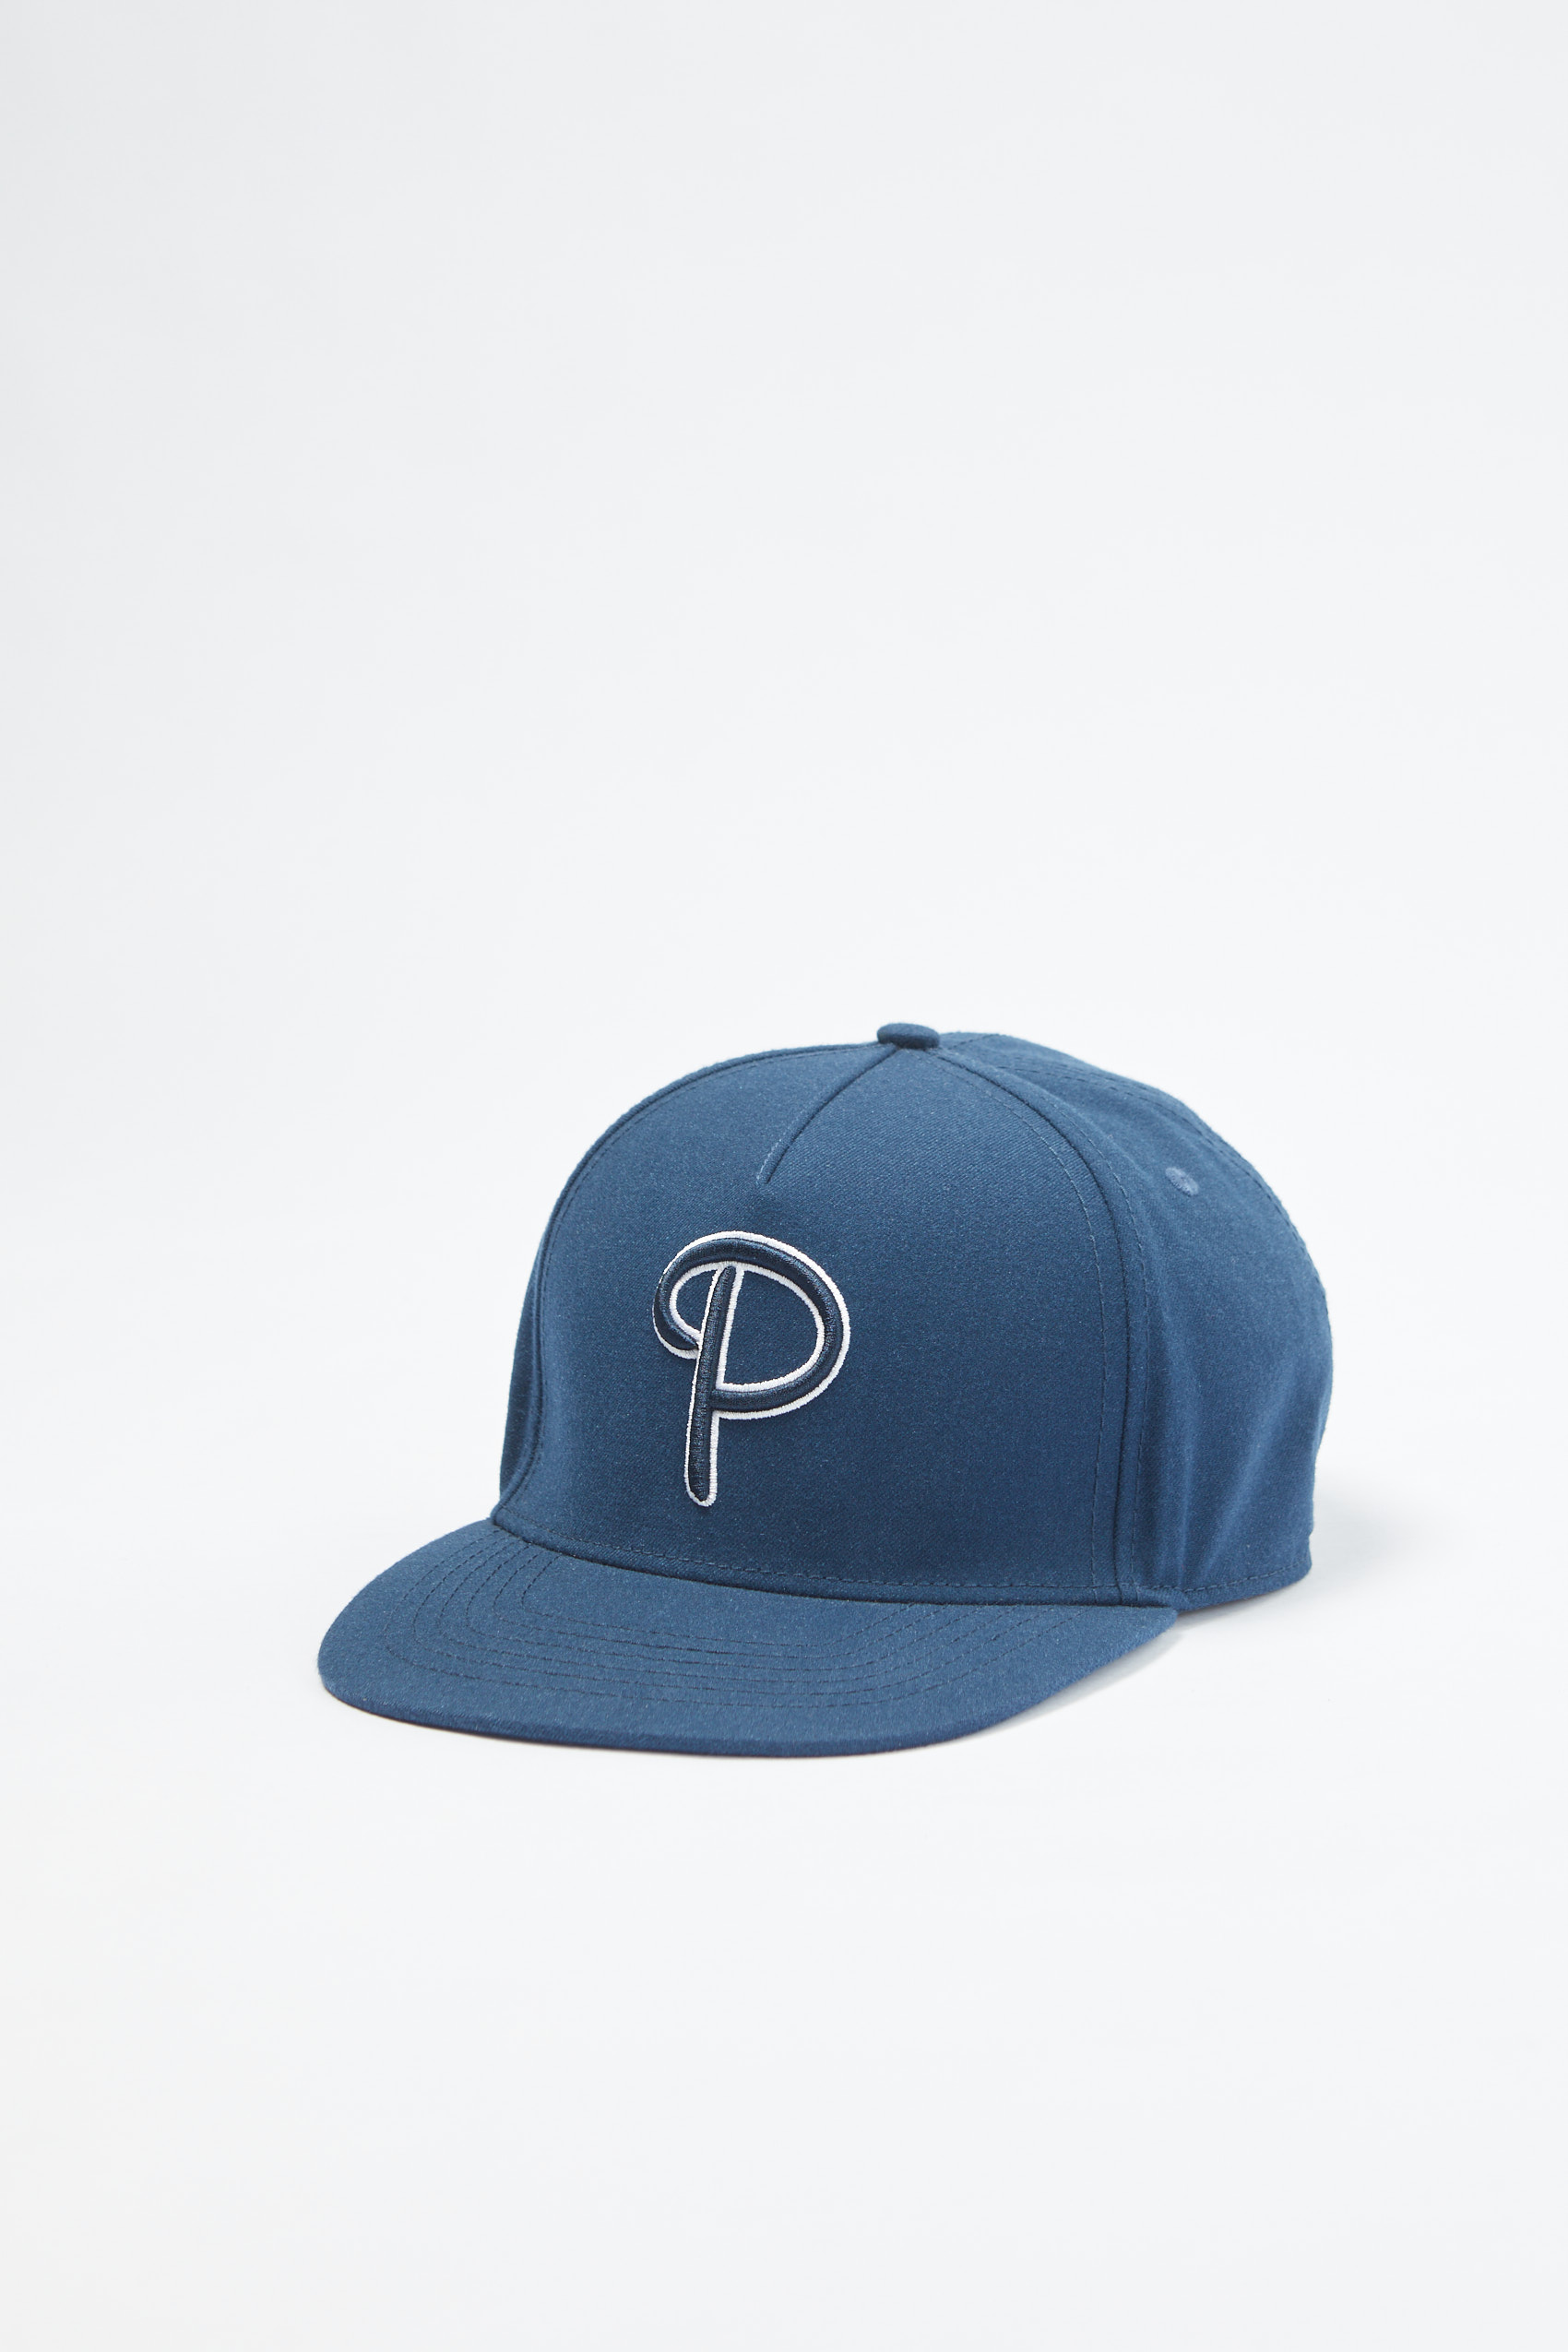 P Logo Twill Flat Cap